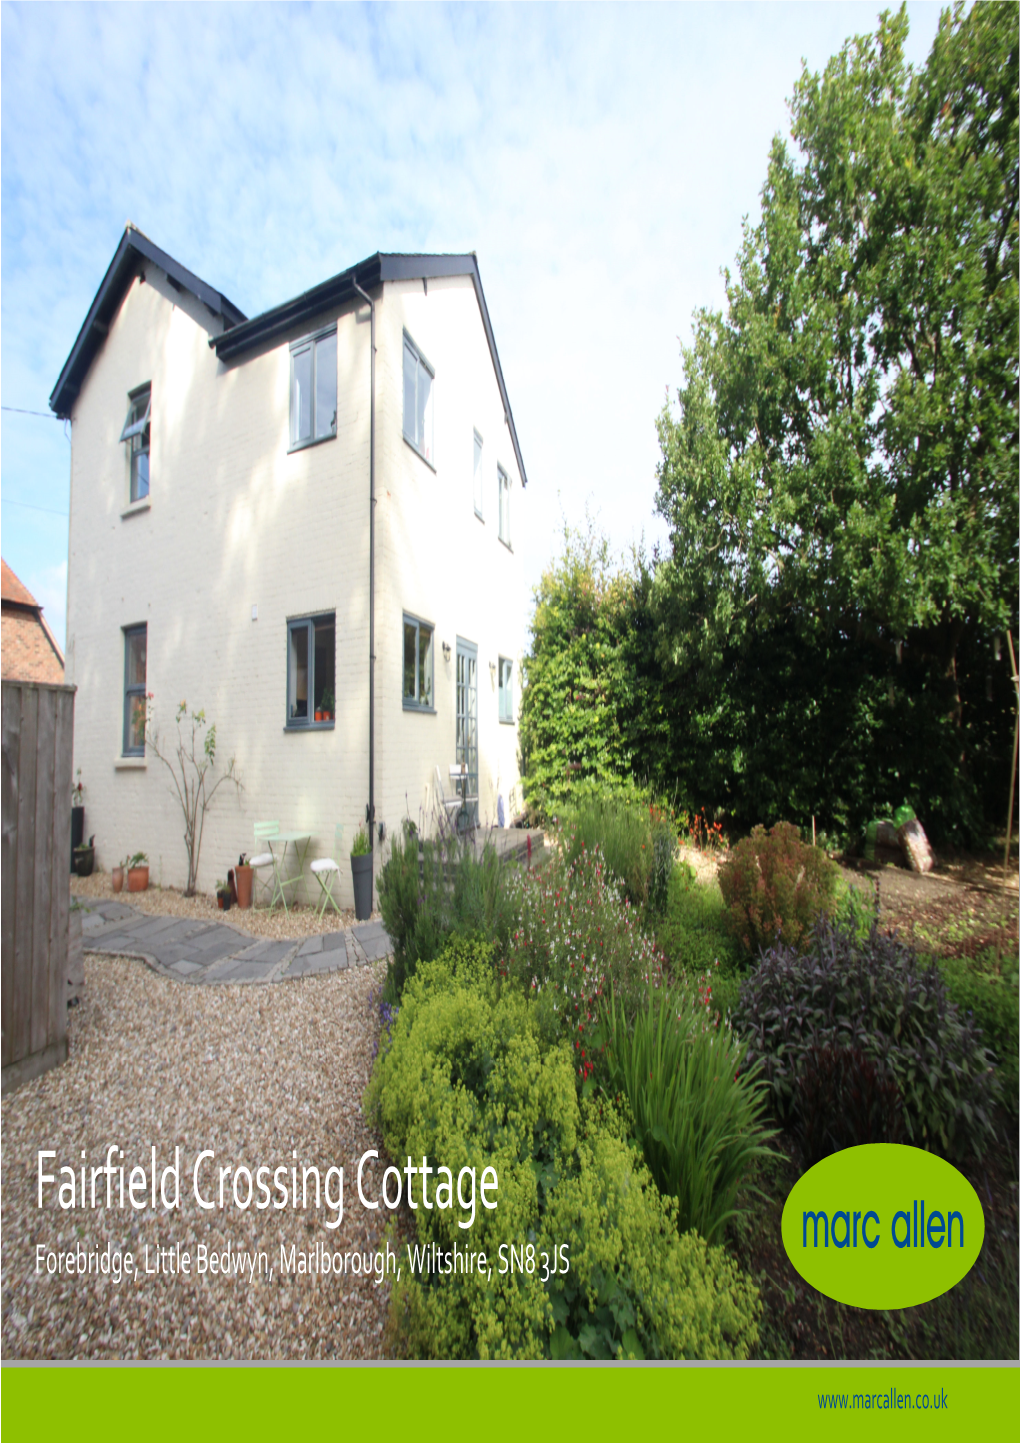 Fairfield Crossing Cottage Forebridge, Little Bedwyn, Marlborough, Wiltshire, SN8 3JS